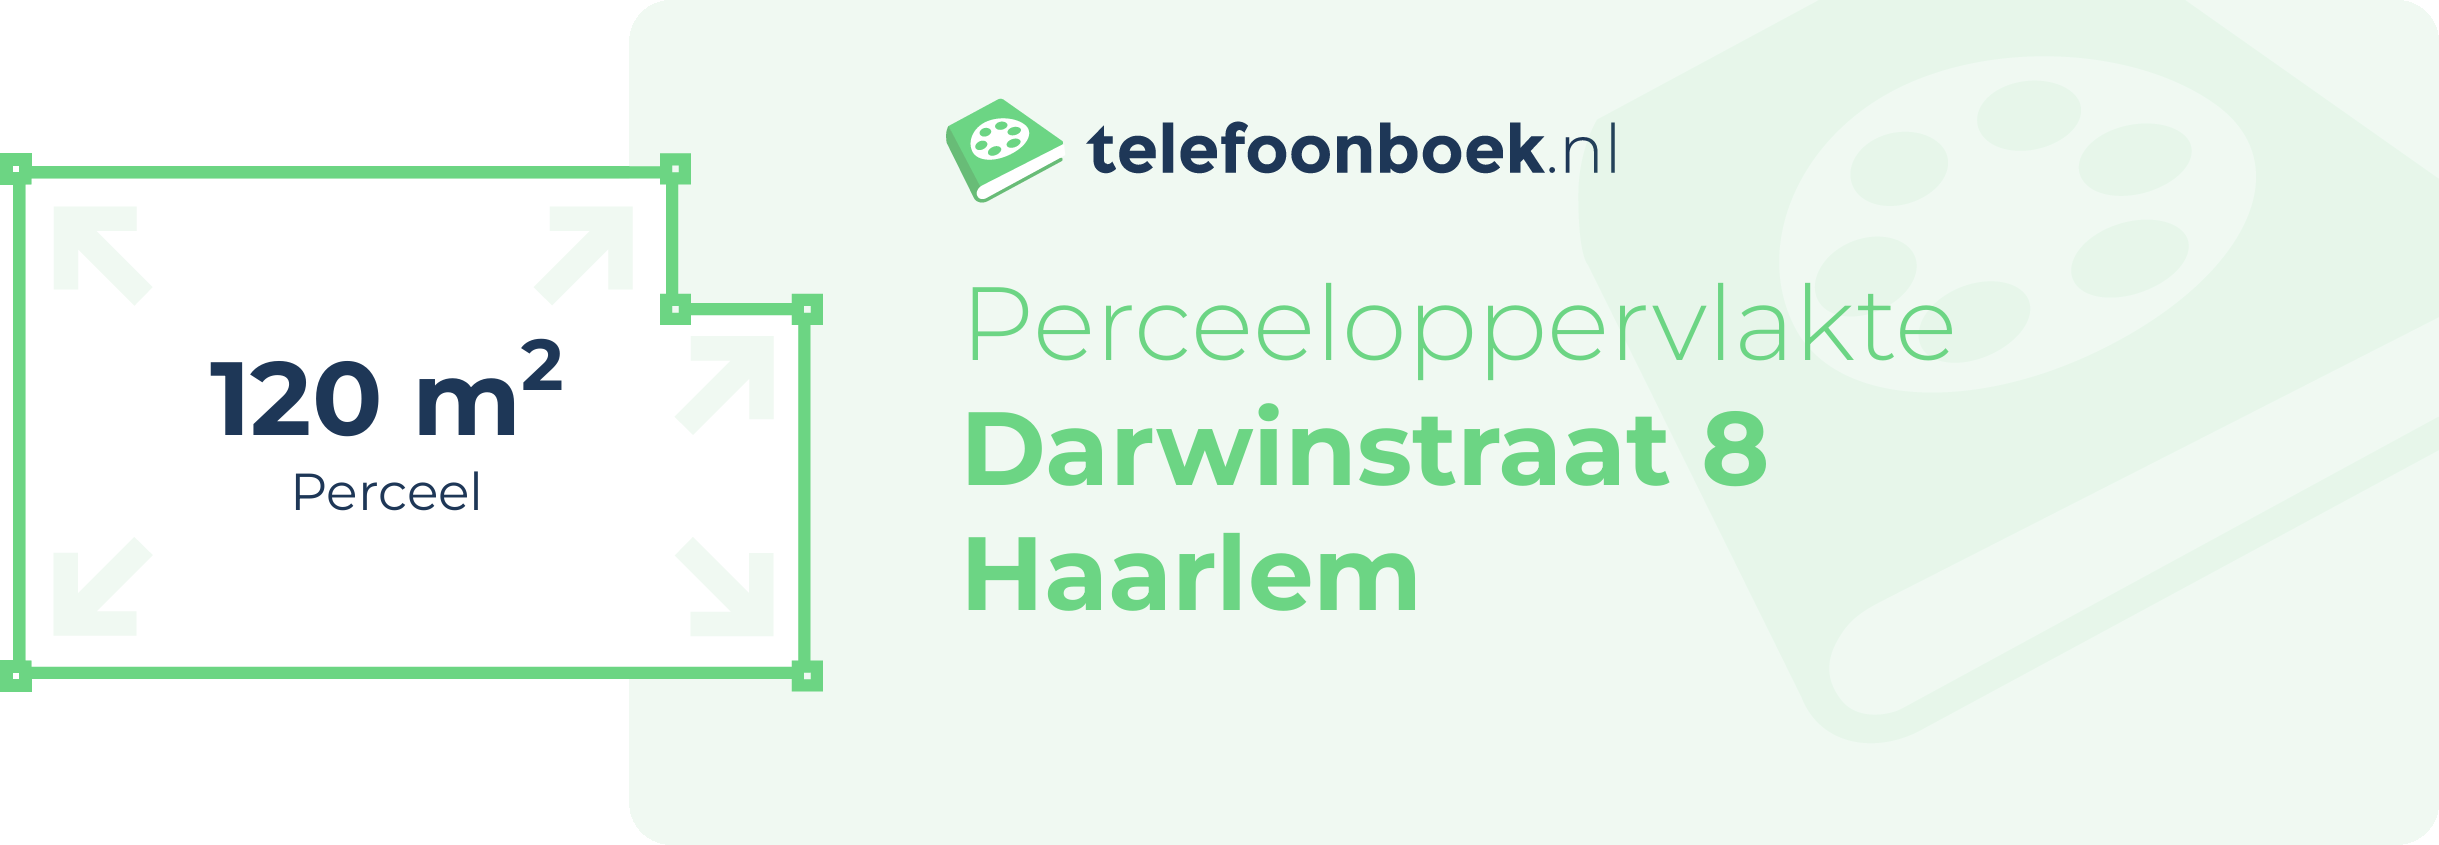 Perceeloppervlakte Darwinstraat 8 Haarlem